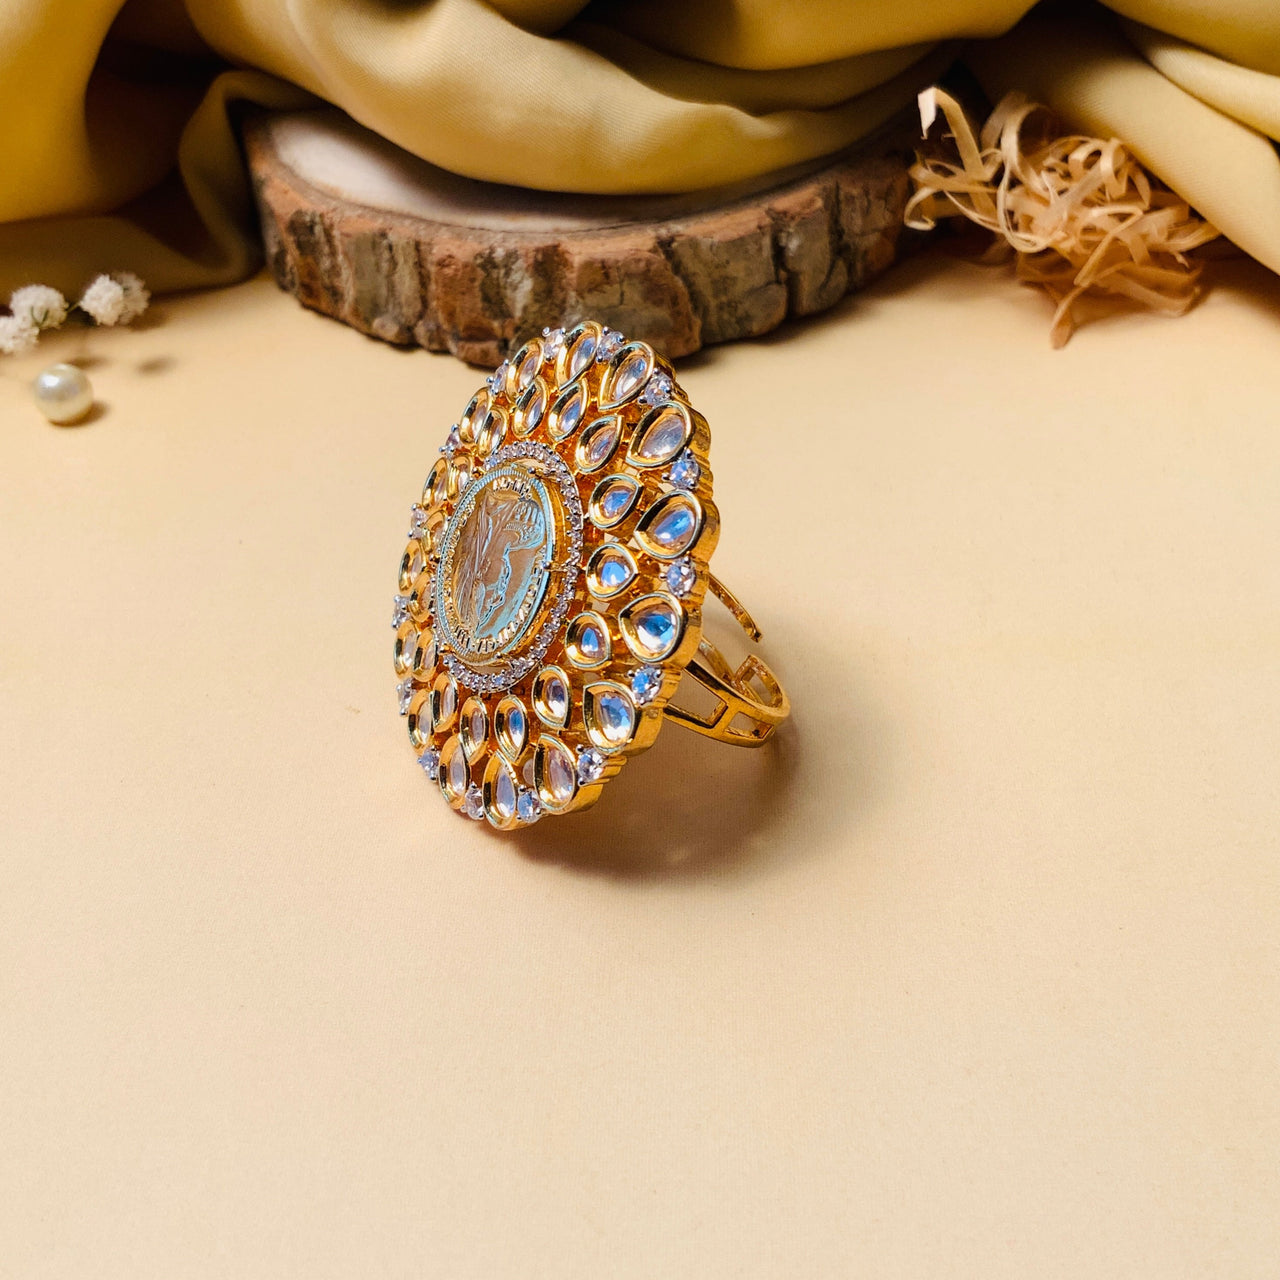 Designer American Diamond Ring For Women - LvaCreation